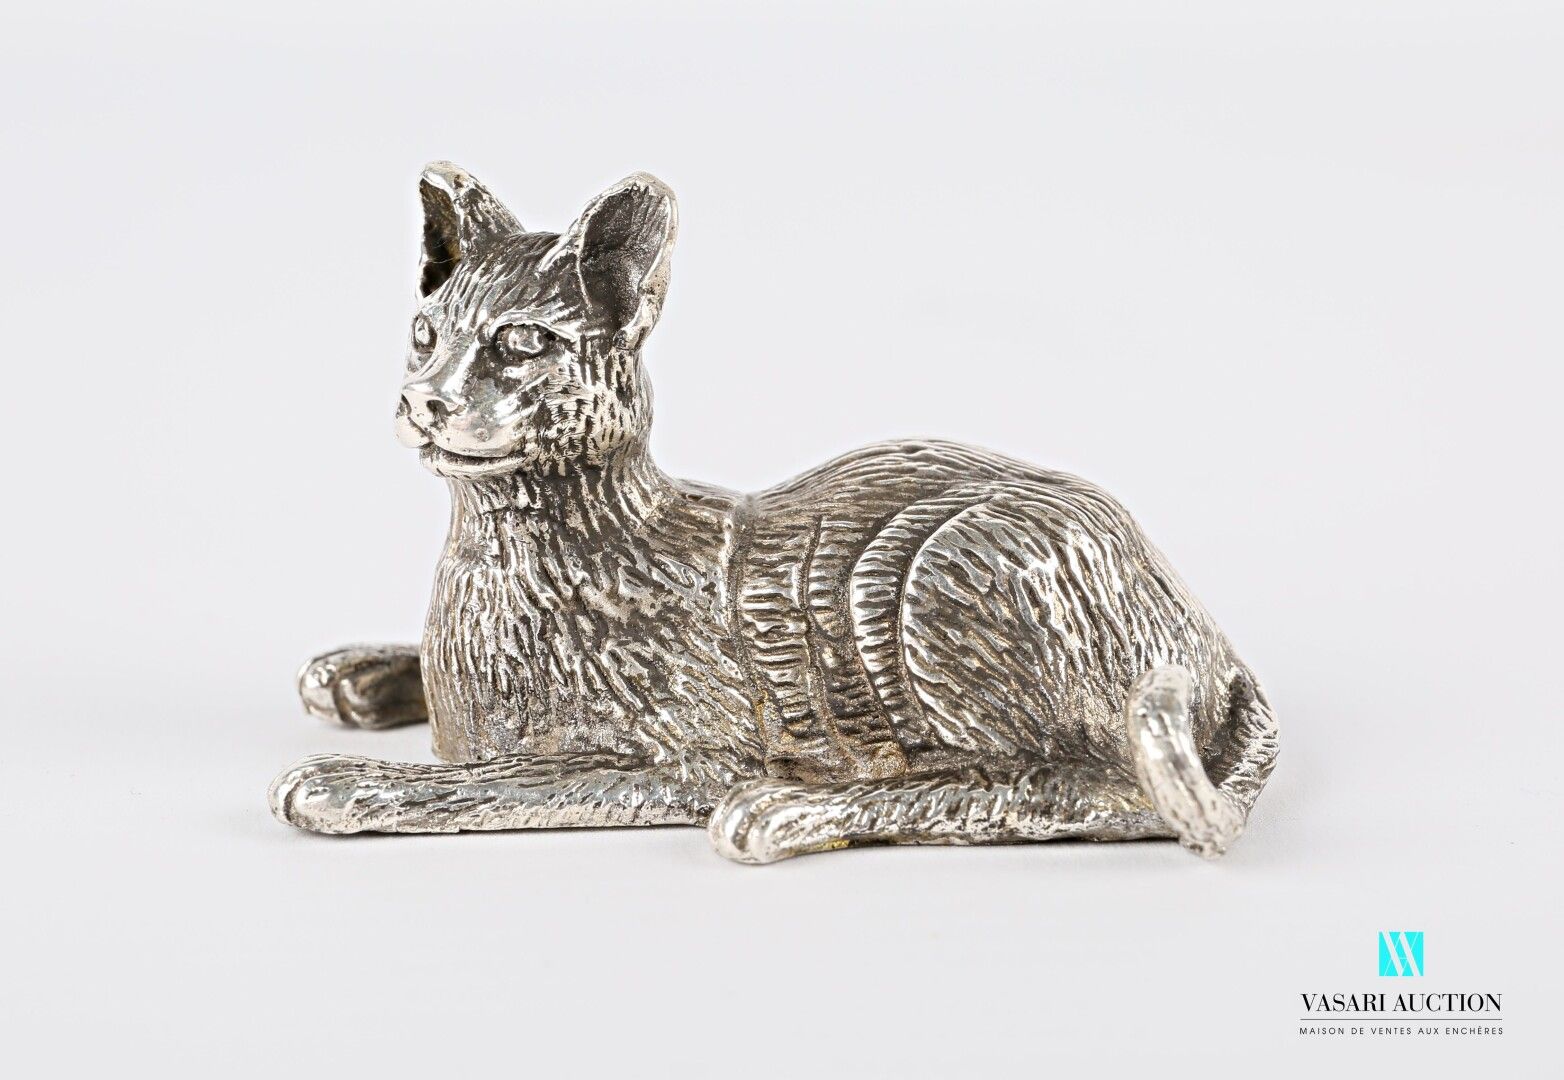 Null Soggetto d'argento che rappresenta un gatto sdraiato.

Peso: 90,15 g